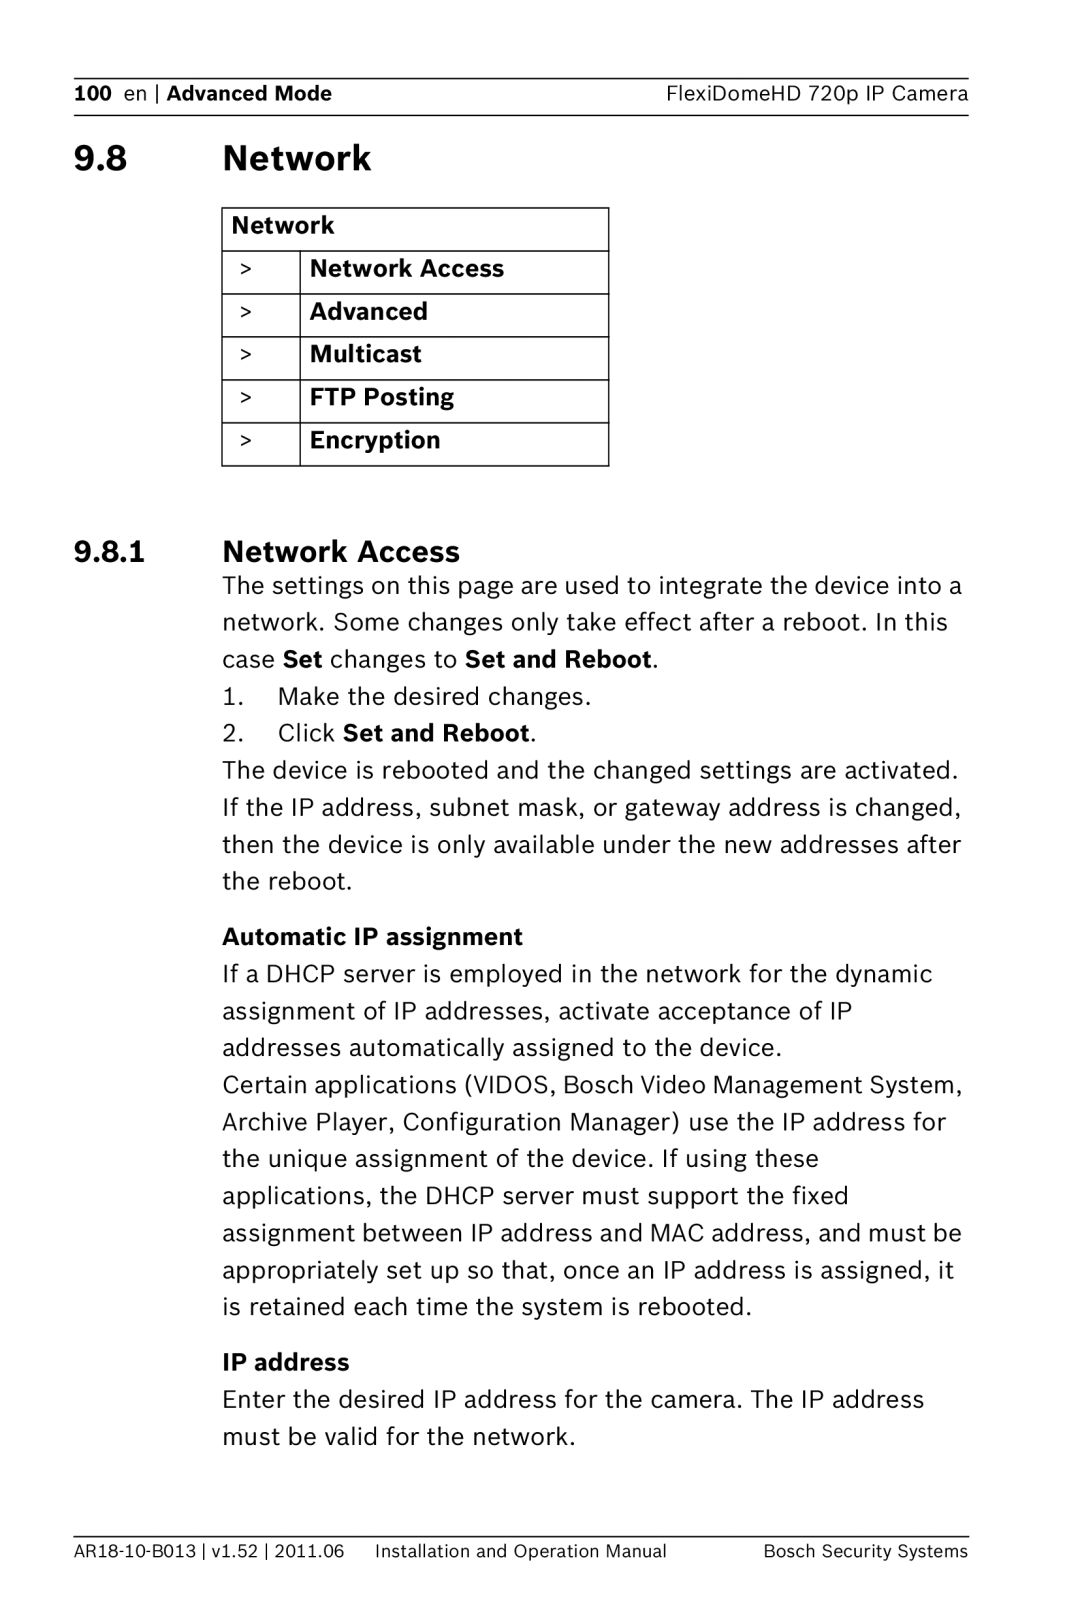 Bosch Appliances NDN-921 9.8Network, 9.8.1Network Access, Network >Network Access >Advanced >Multicast, IP address 